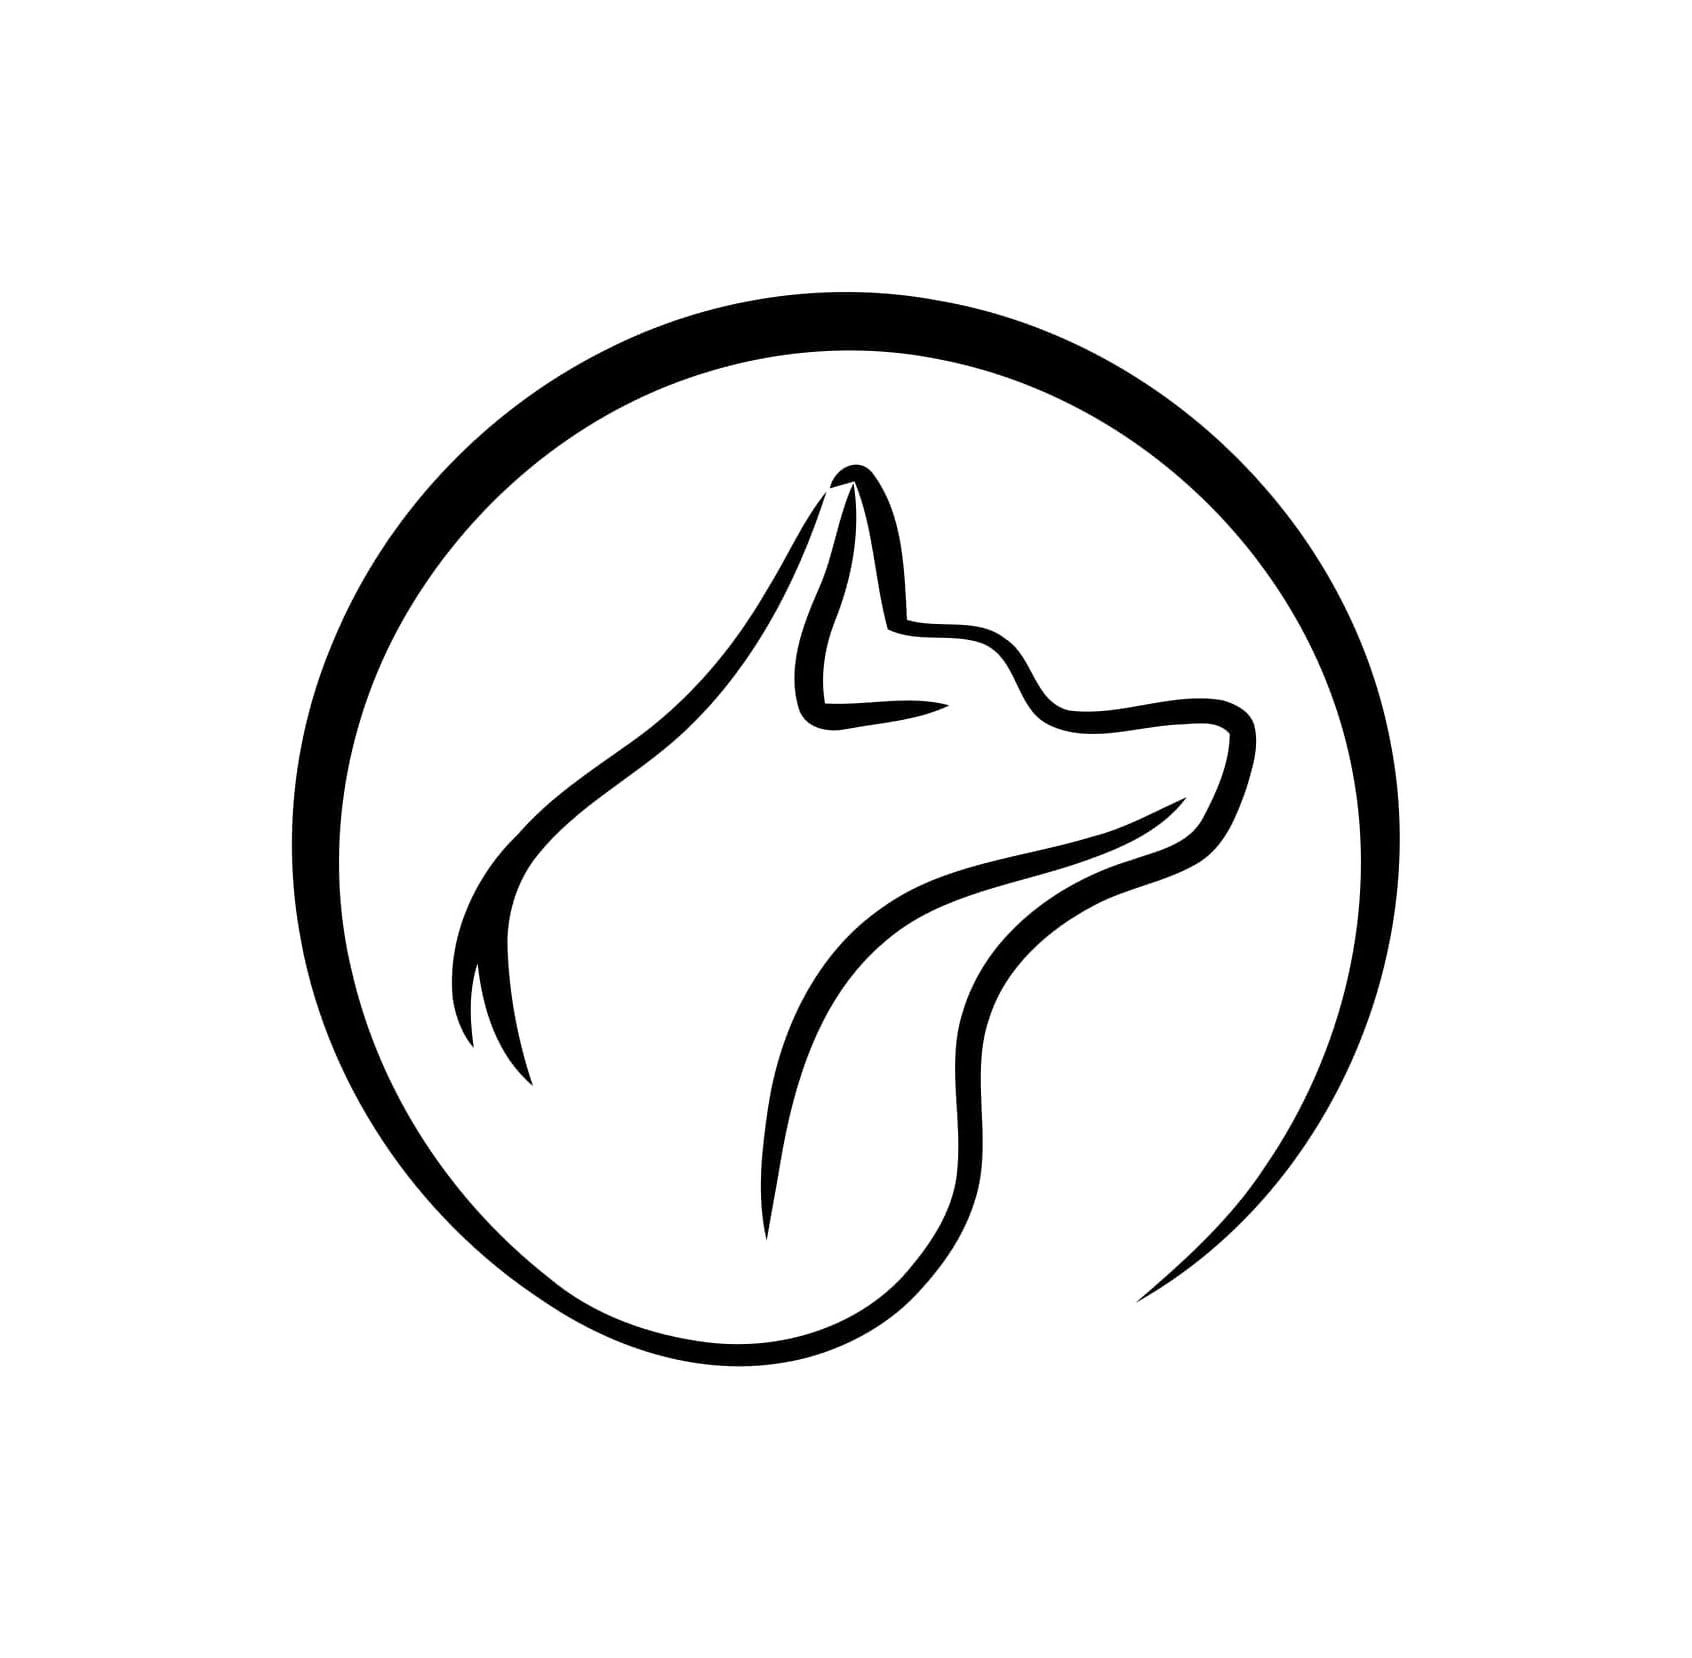 Trademark Logo SILVER FOX